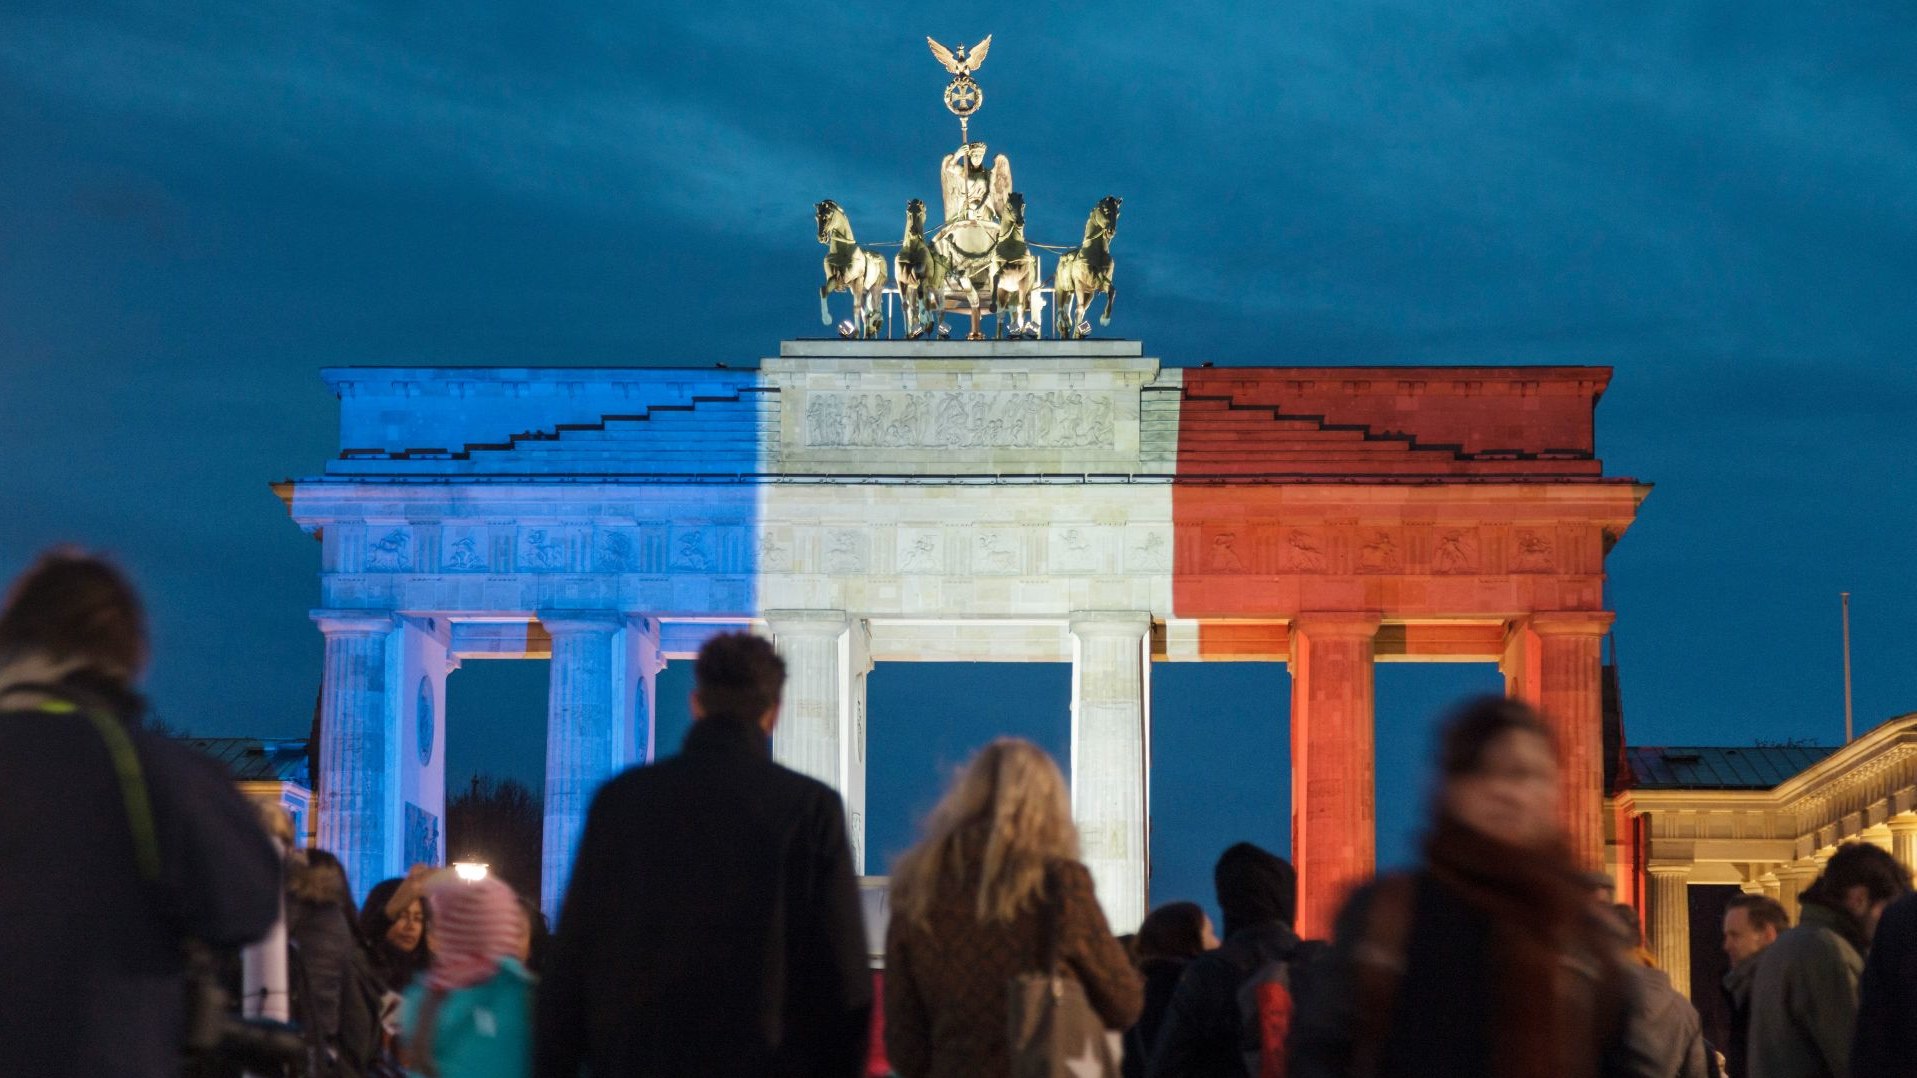 Fotografie von Pierre Adenis. Brandenburger Tor mit Tricolore-Beleuchtung. Rückblende 2015. Der deutsche Preis für politische Fotografie und Karikatur